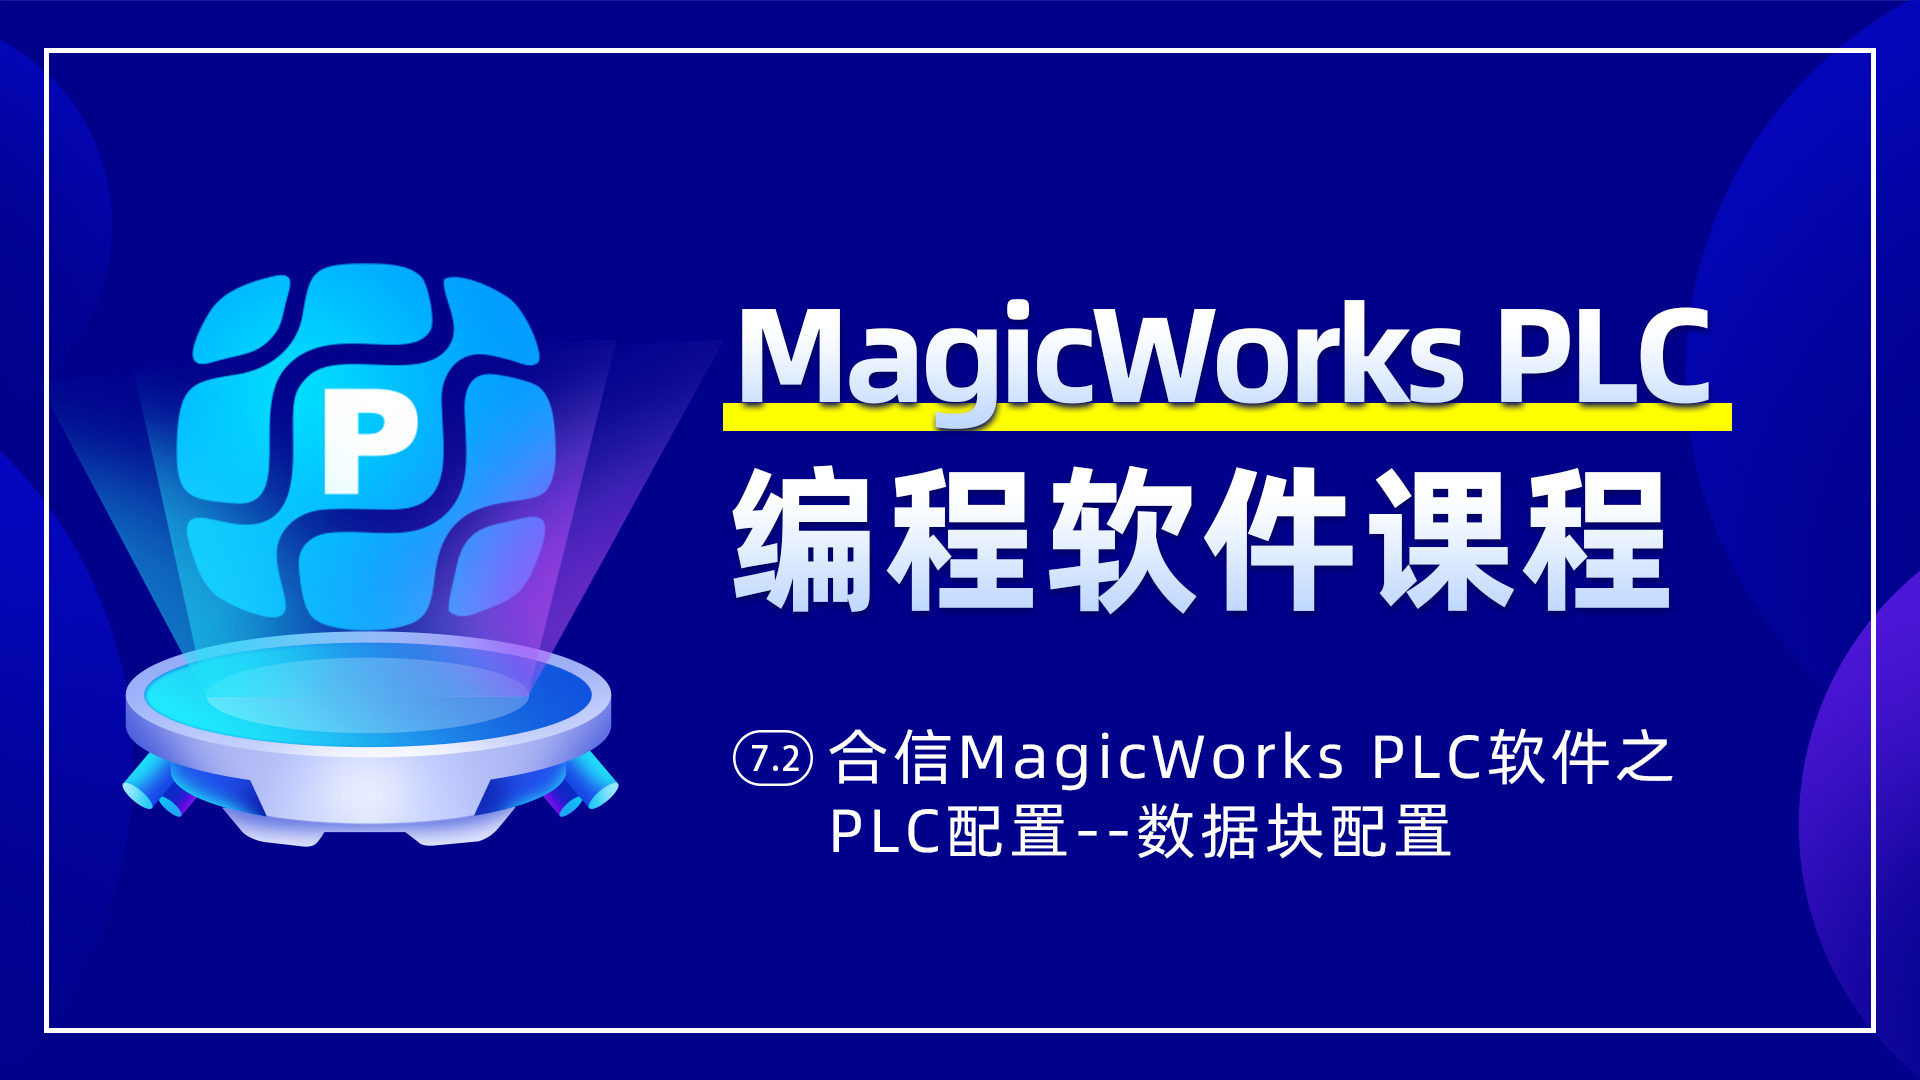 7.2、合信MagicWorks PLC軟件PLC配置之數據塊配置